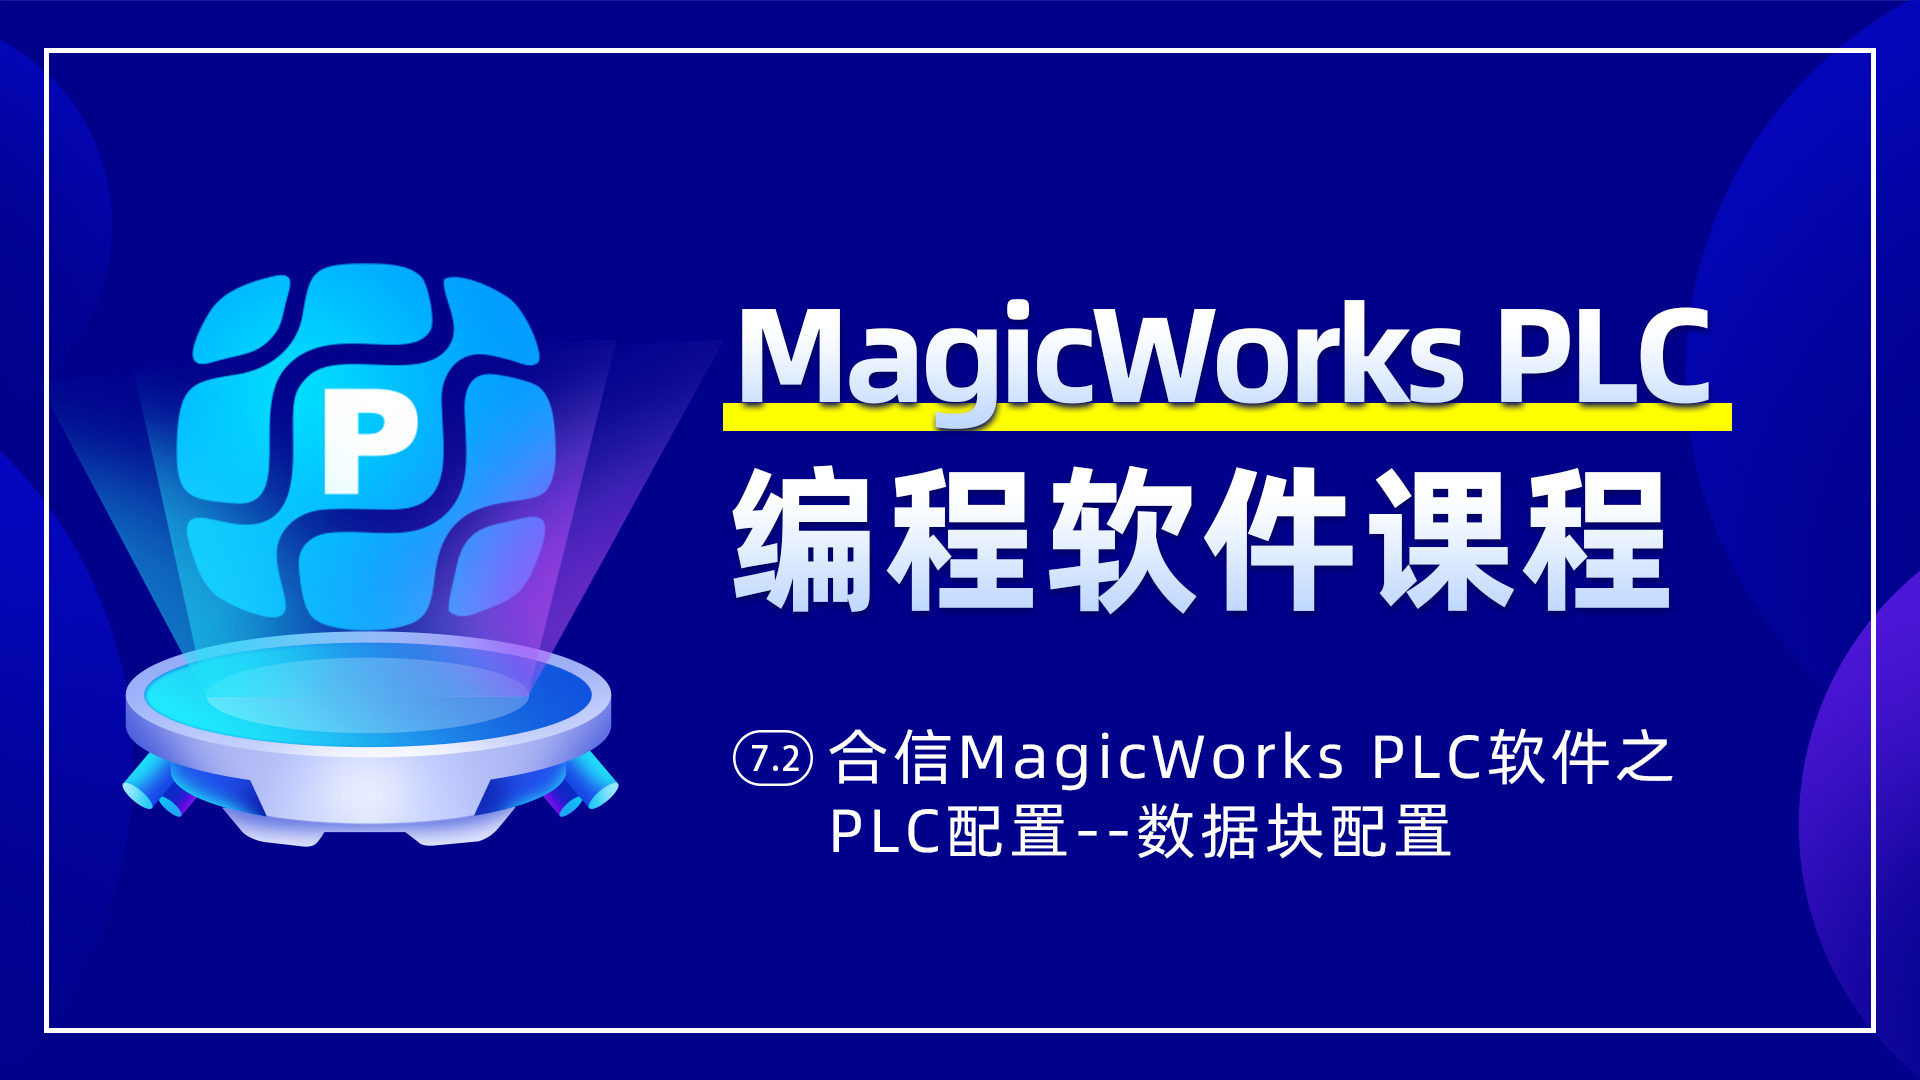 7.2、合信MagicWorks PLC軟件PLC配置之數據塊配置